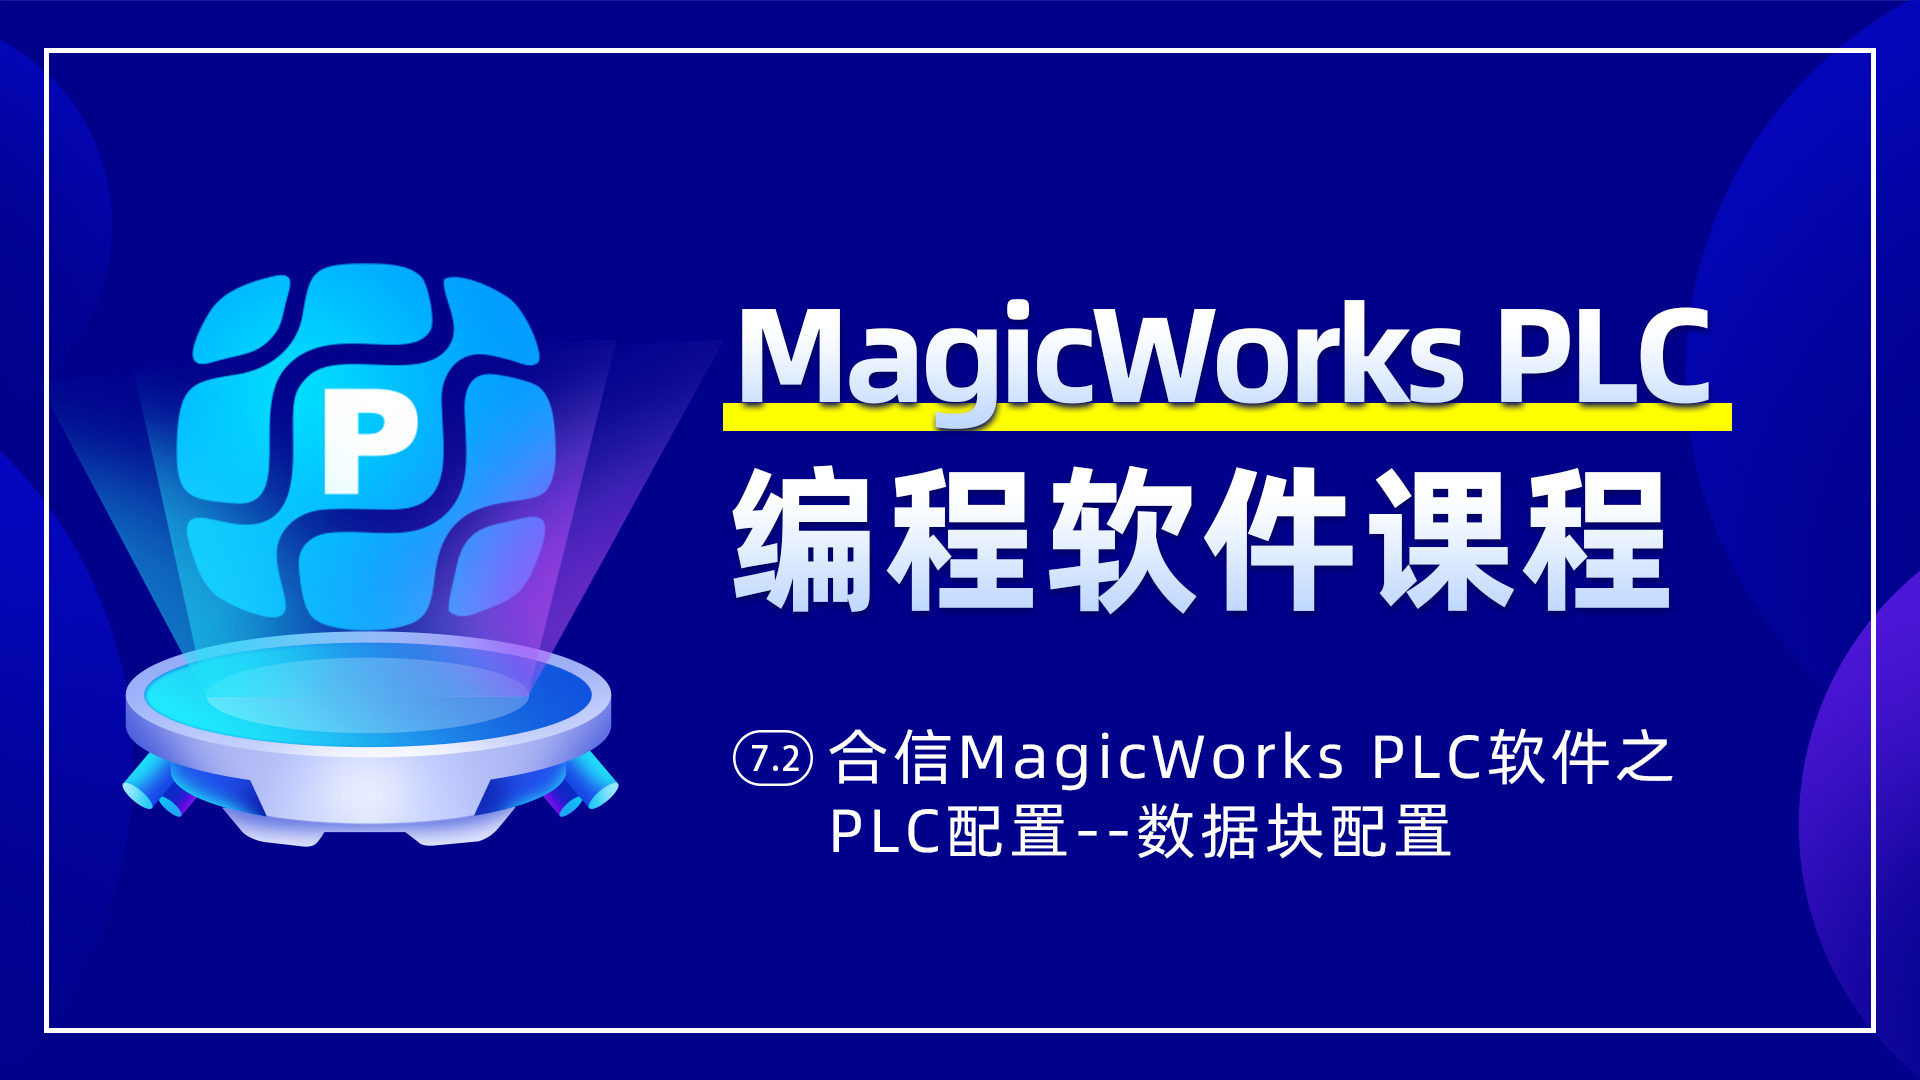 7.2、合信MagicWorks PLC軟件PLC配置之數據塊配置